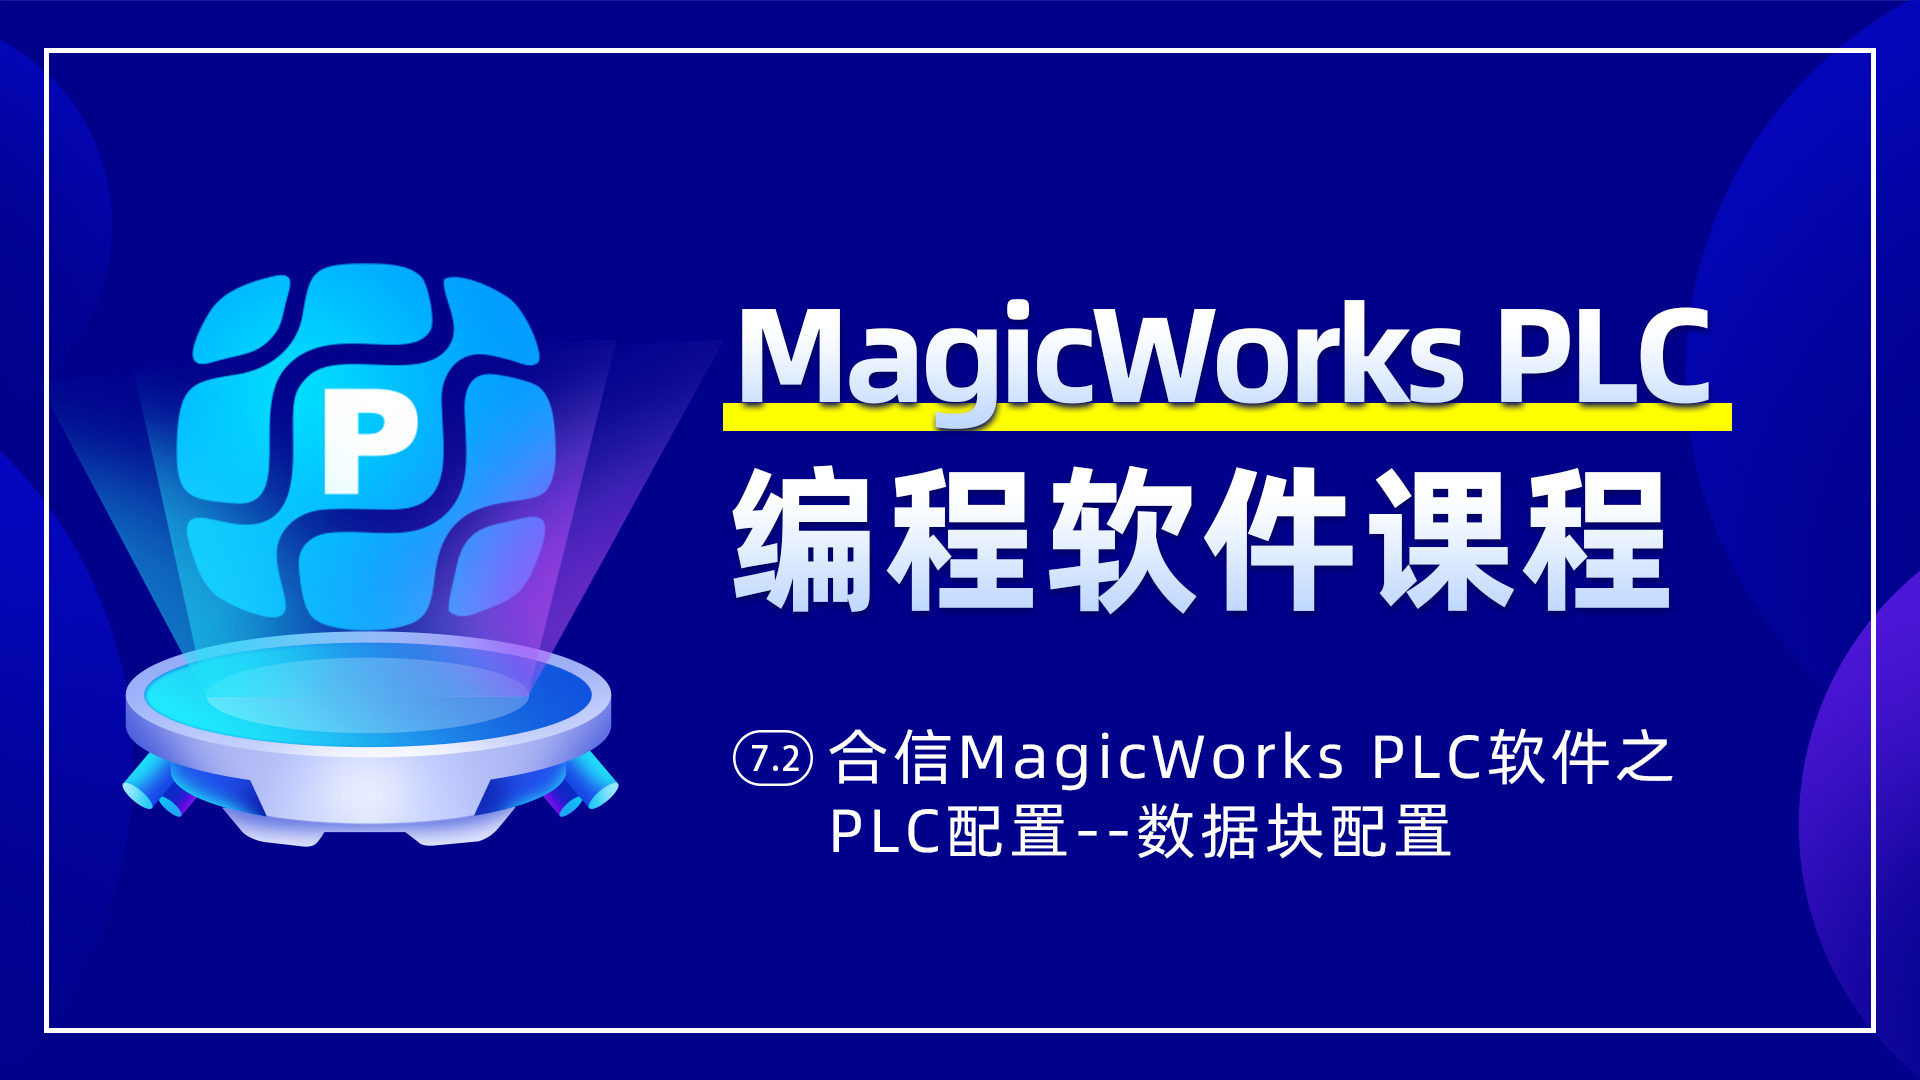 7.2、合信MagicWorks PLC軟件PLC配置之數據塊配置